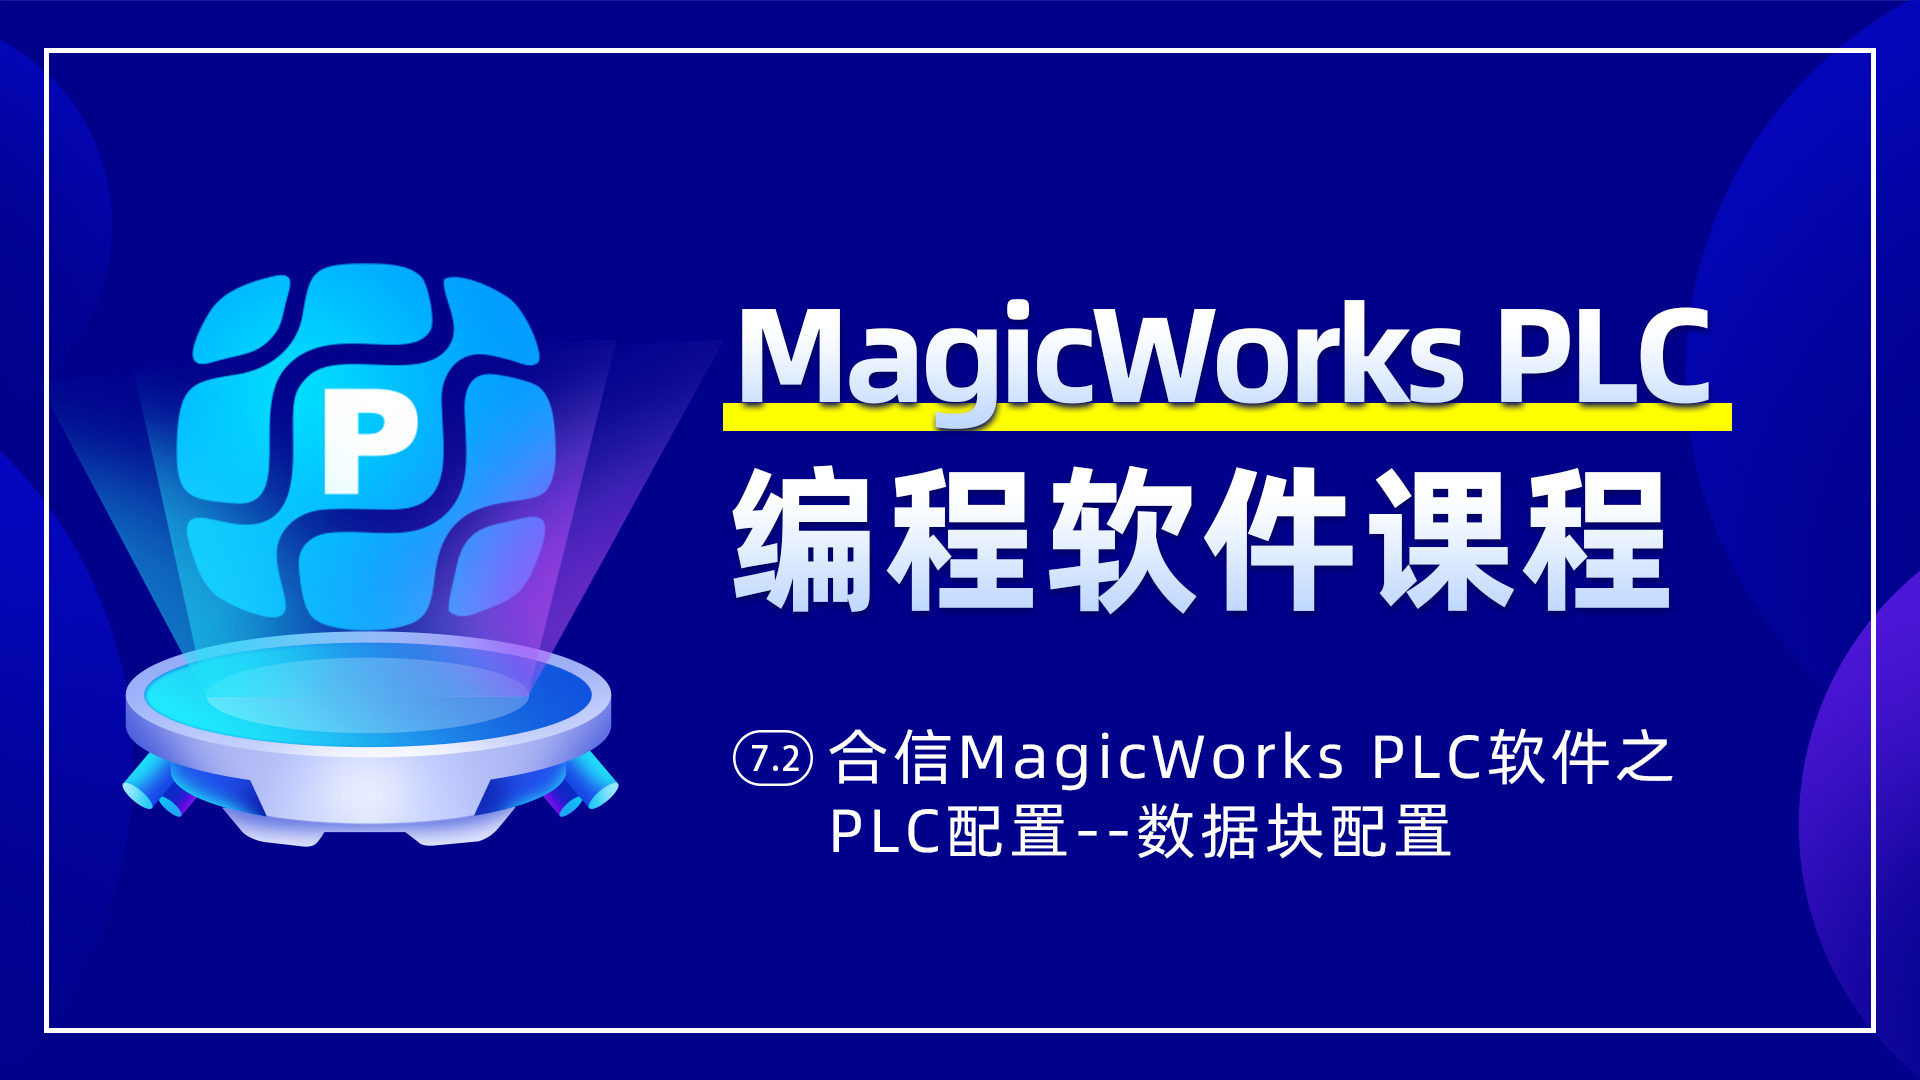 7.2、合信MagicWorks PLC軟件PLC配置之數據塊配置